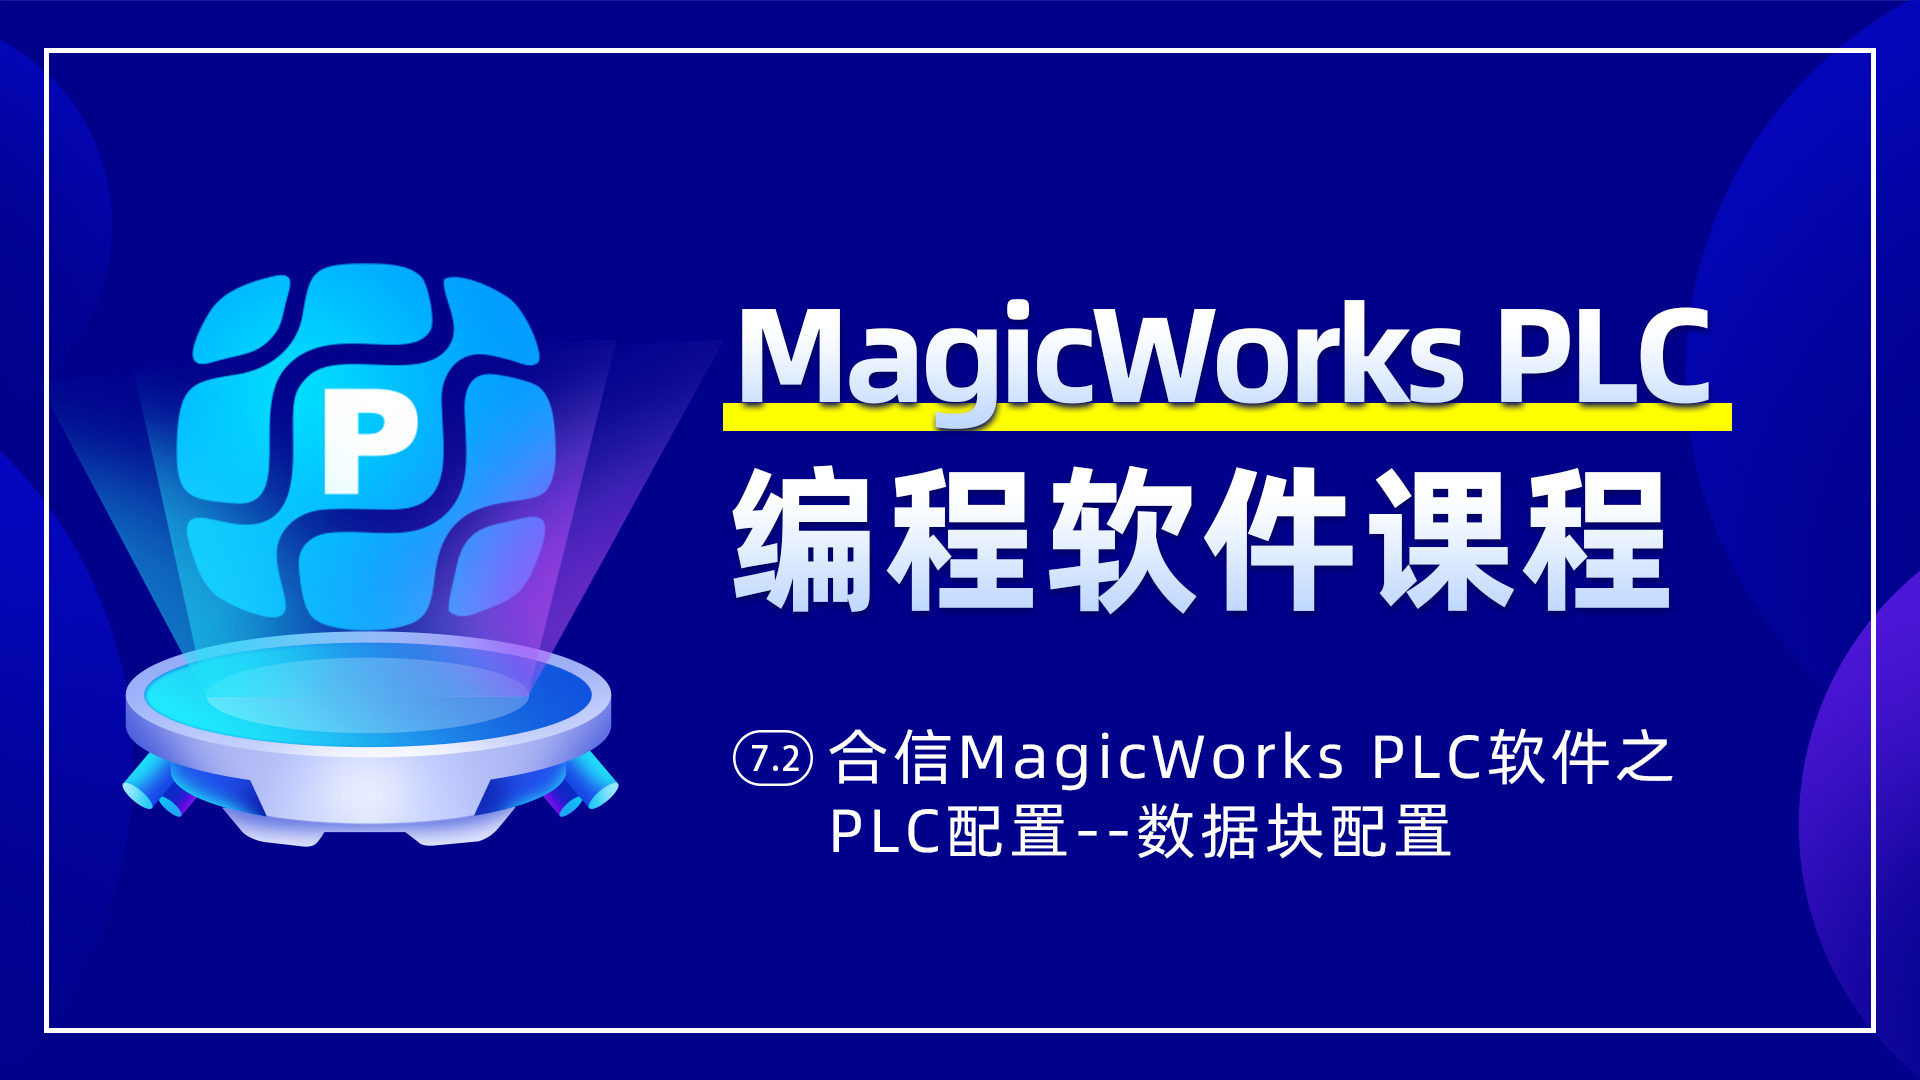 7.2、合信MagicWorks PLC軟件PLC配置之數據塊配置